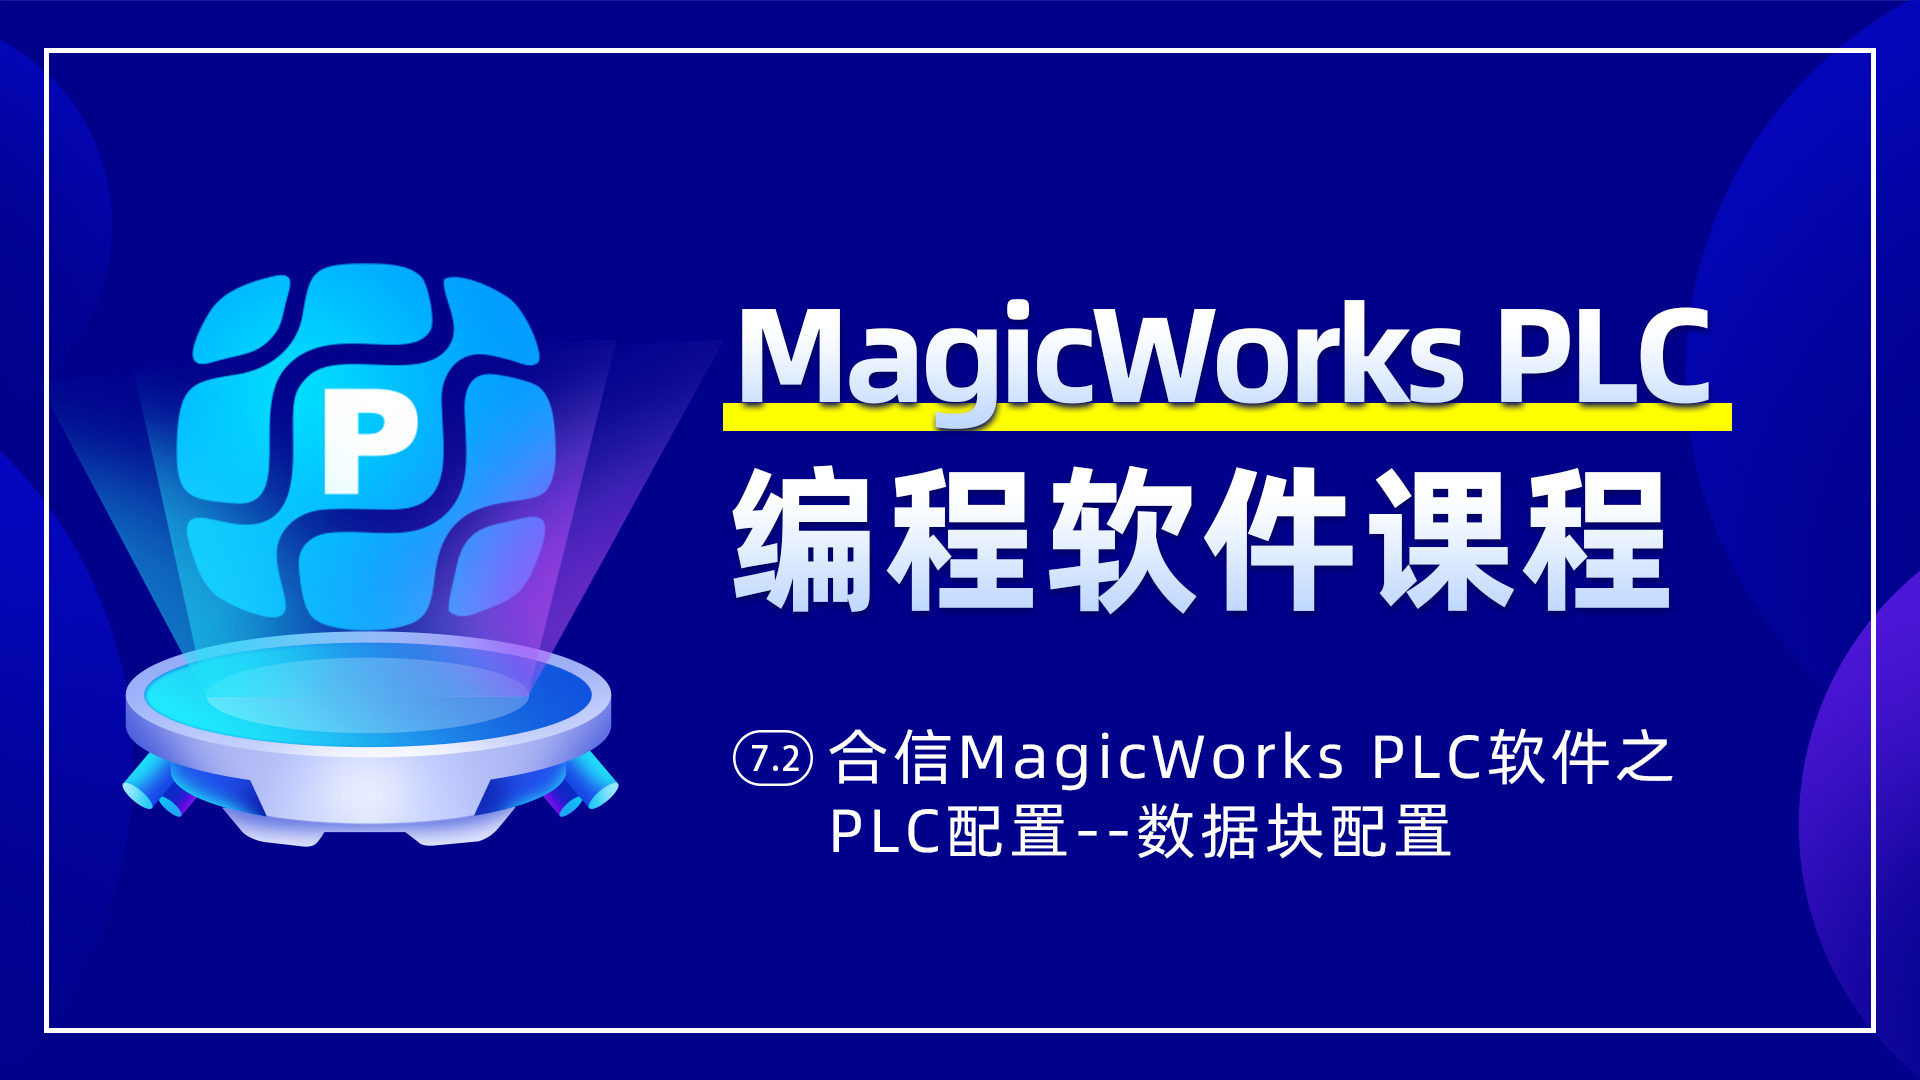 7.2、合信MagicWorks PLC軟件PLC配置之數據塊配置